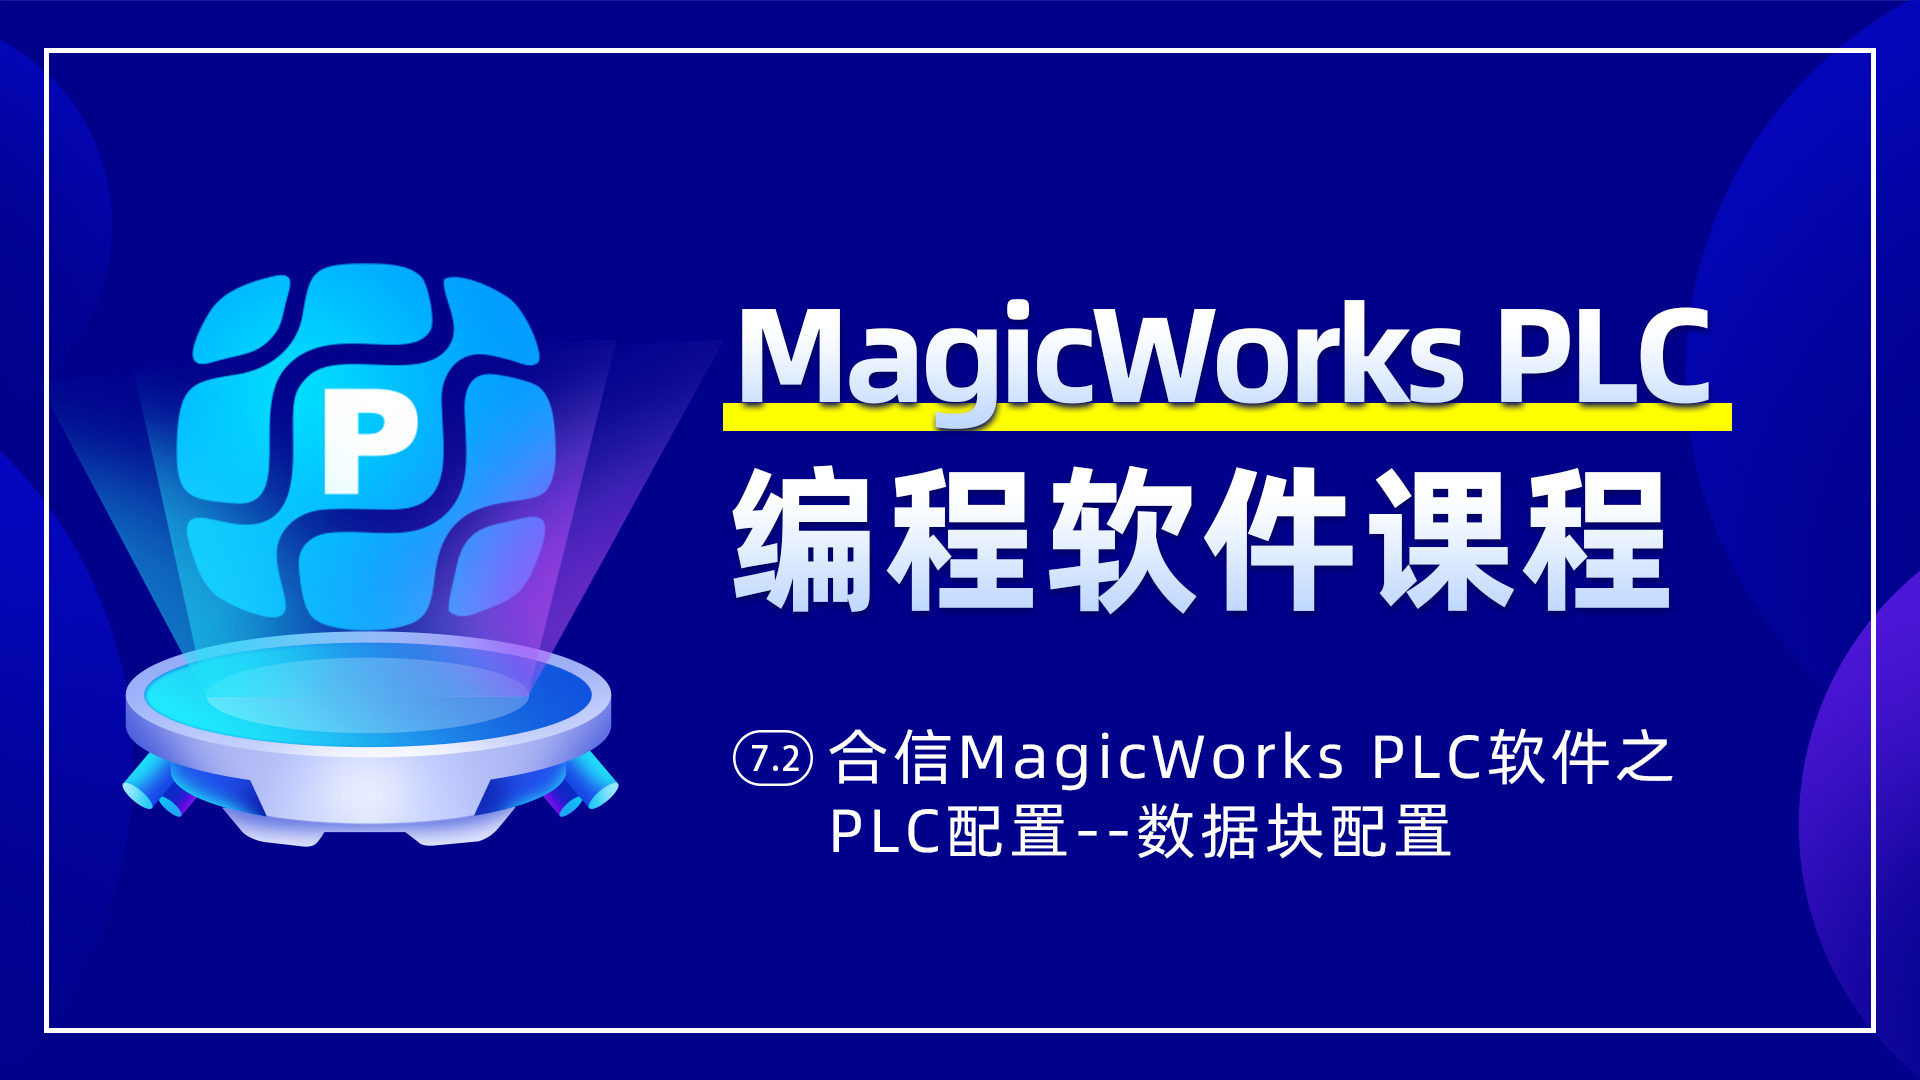 7.2、合信MagicWorks PLC軟件PLC配置之數據塊配置